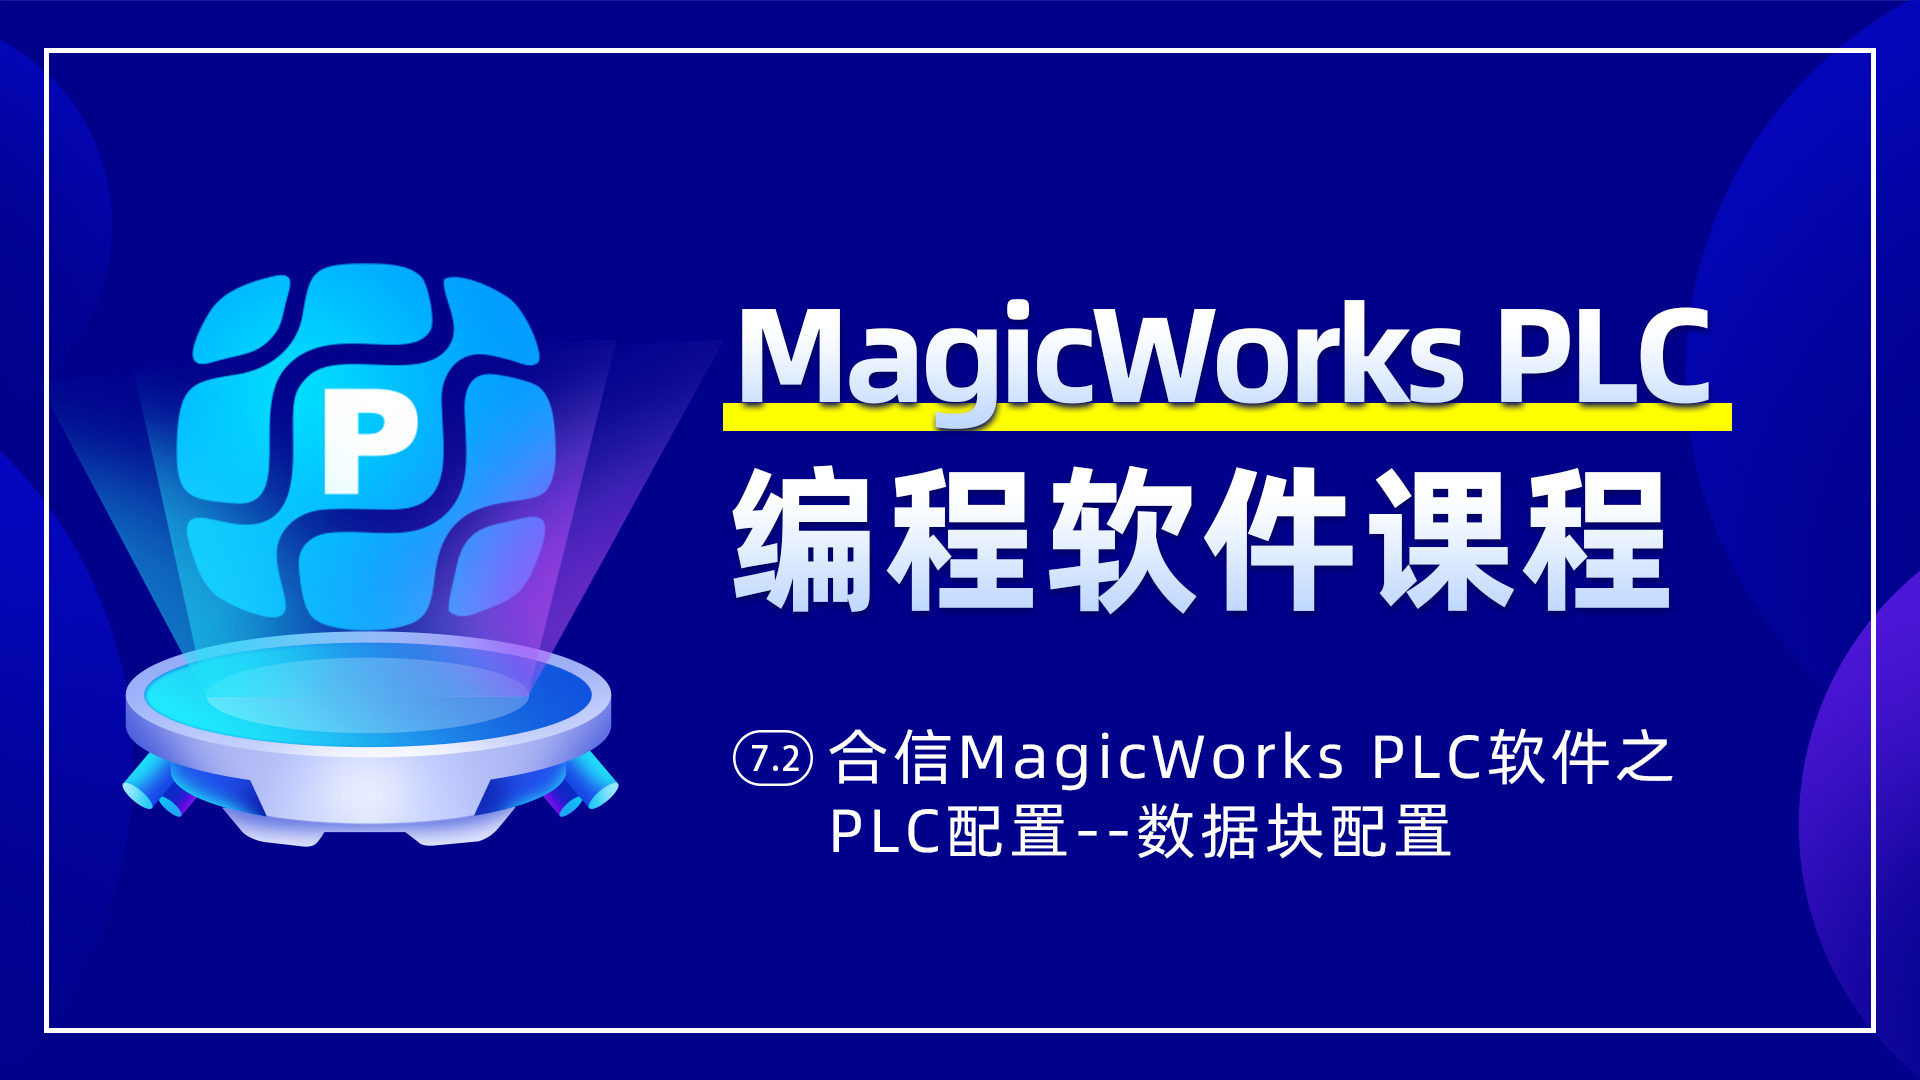 7.2、合信MagicWorks PLC軟件PLC配置之數據塊配置